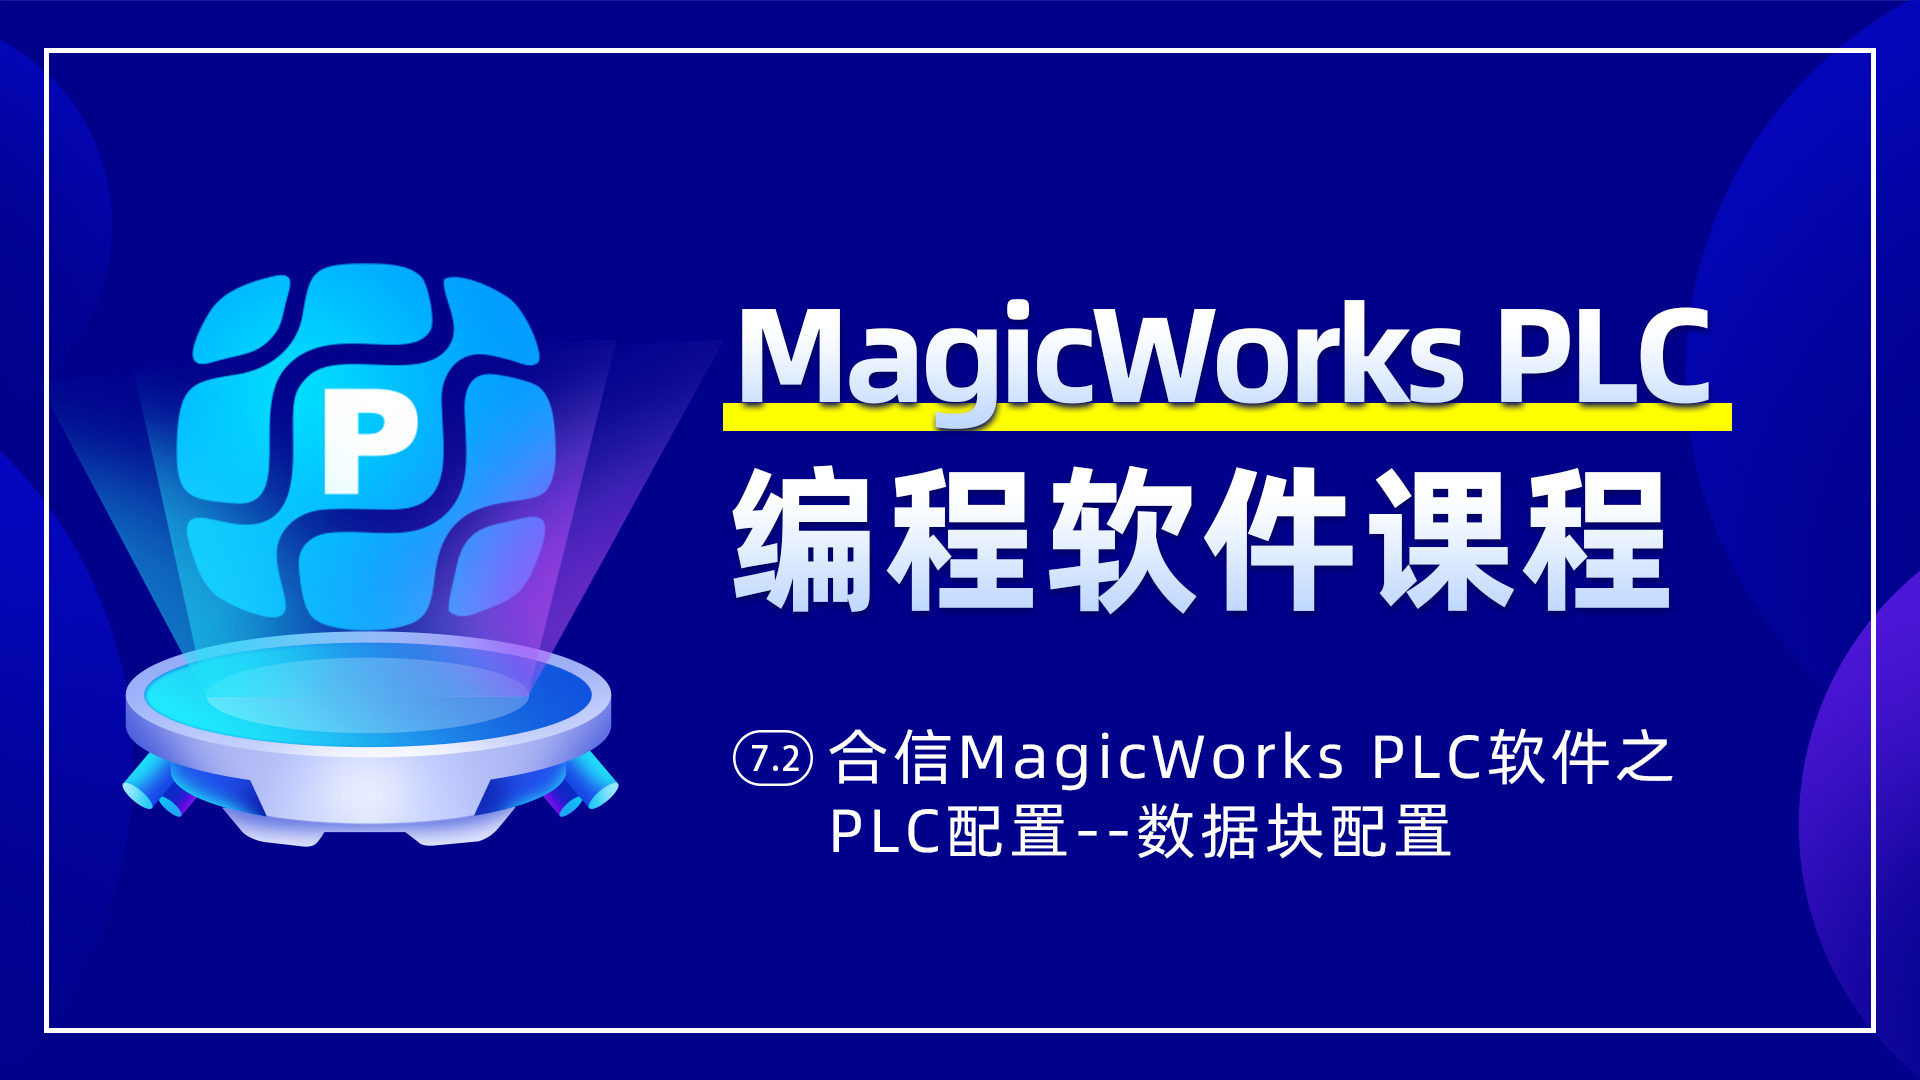 7.2、合信MagicWorks PLC軟件PLC配置之數據塊配置